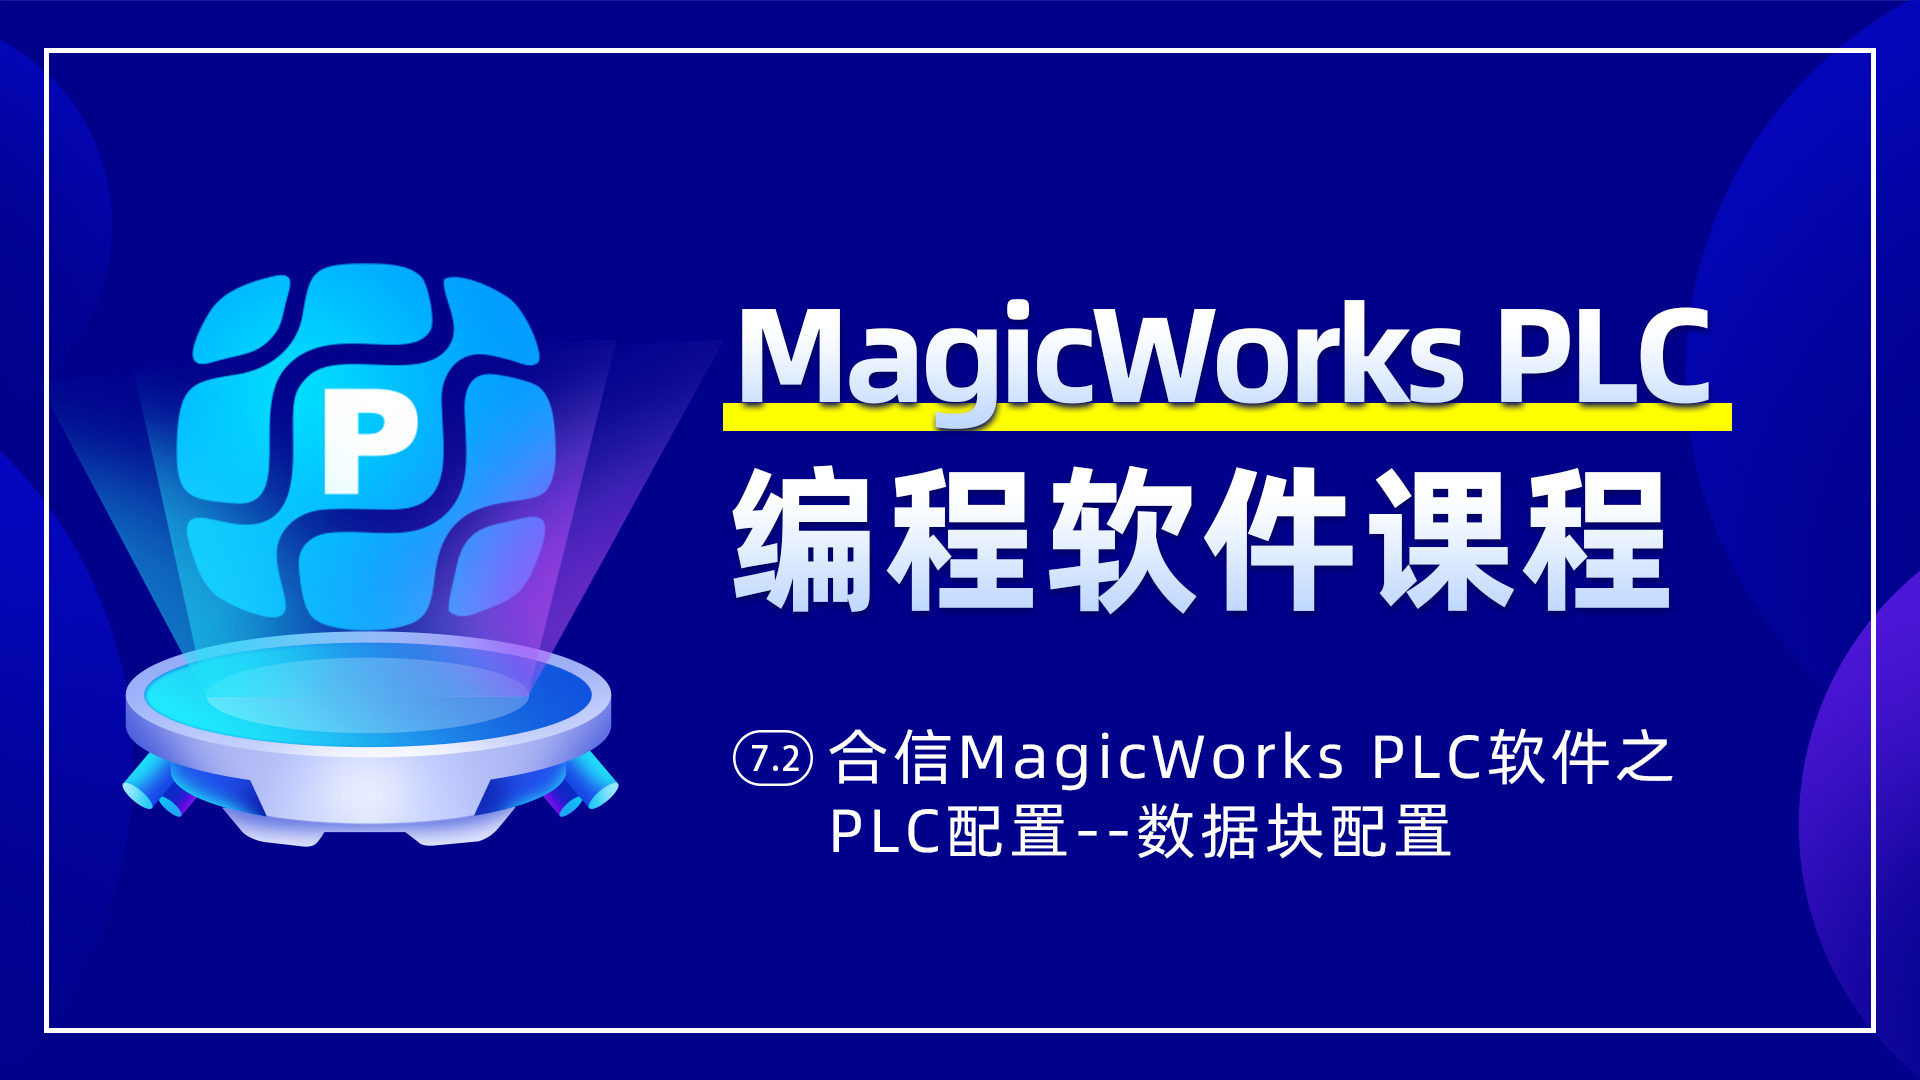 7.2、合信MagicWorks PLC軟件PLC配置之數據塊配置